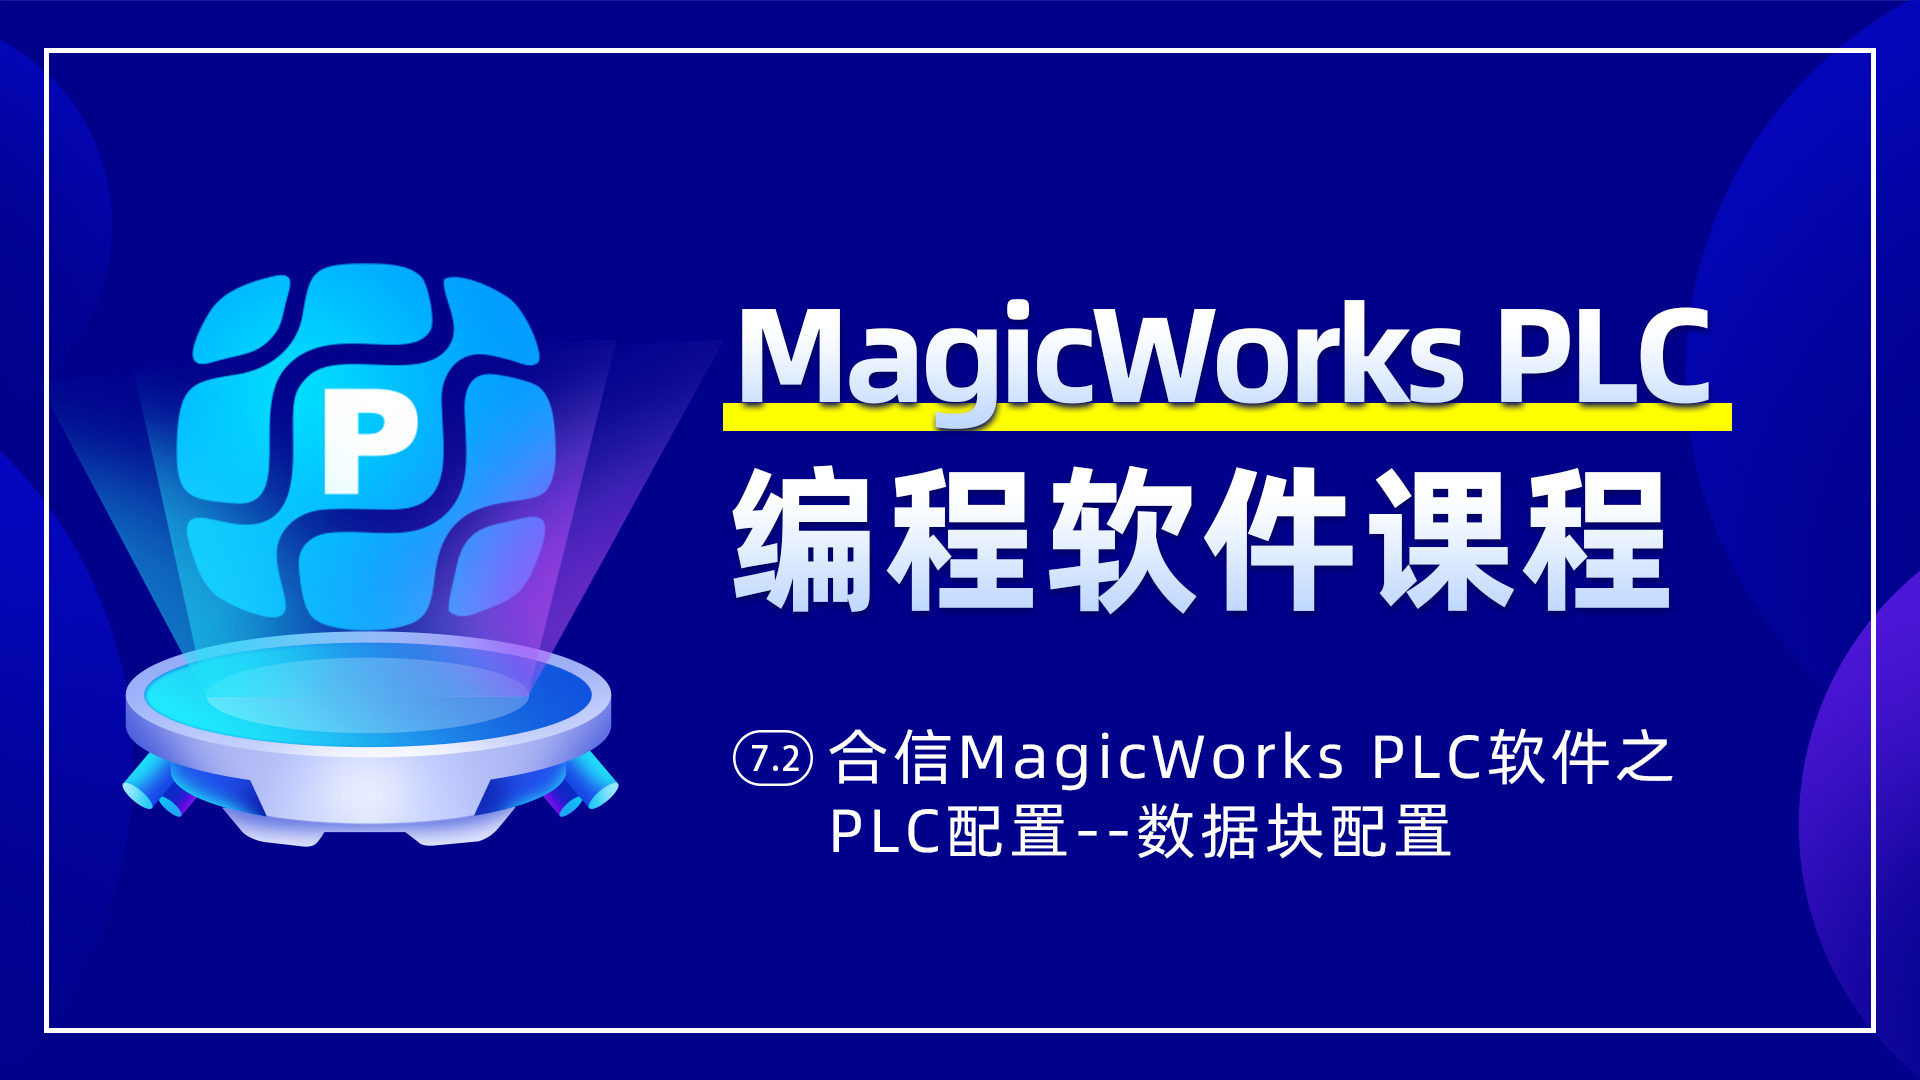 7.2、合信MagicWorks PLC軟件PLC配置之數據塊配置